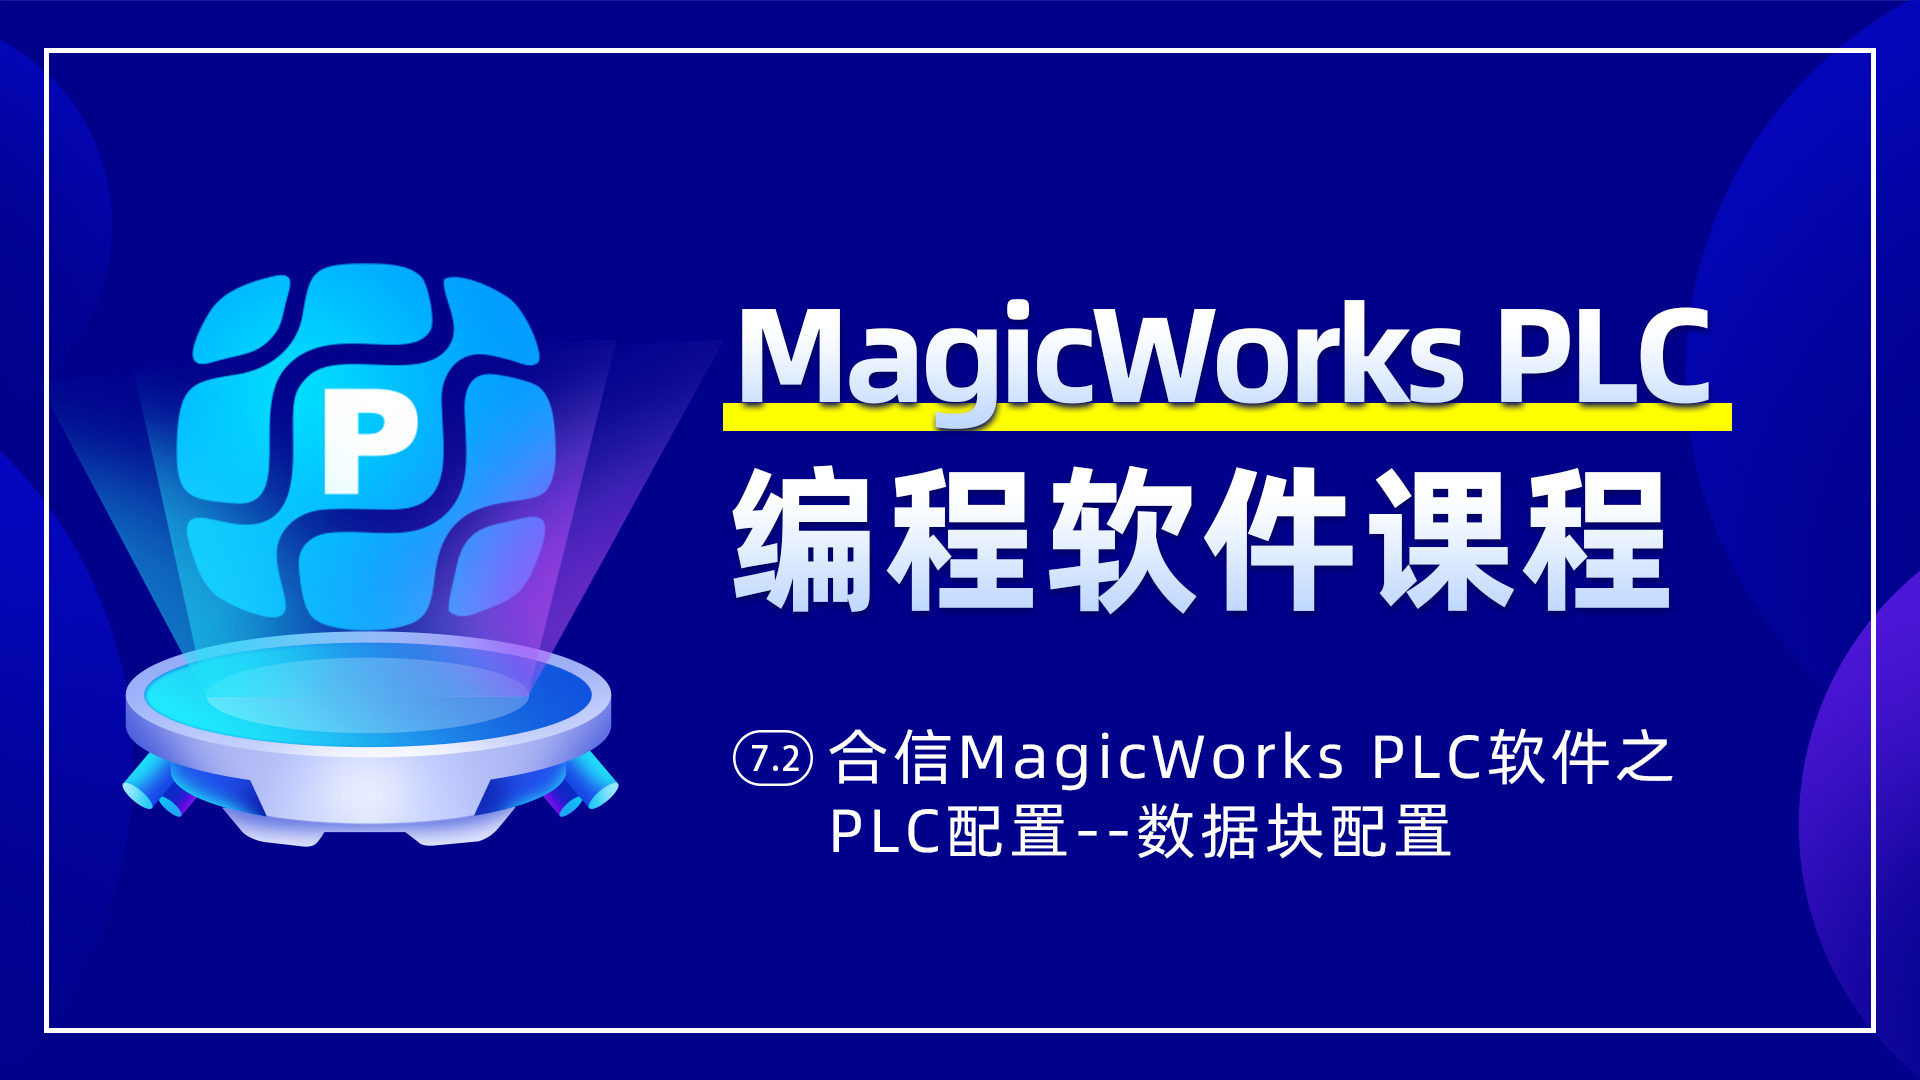 7.2、合信MagicWorks PLC軟件PLC配置之數據塊配置